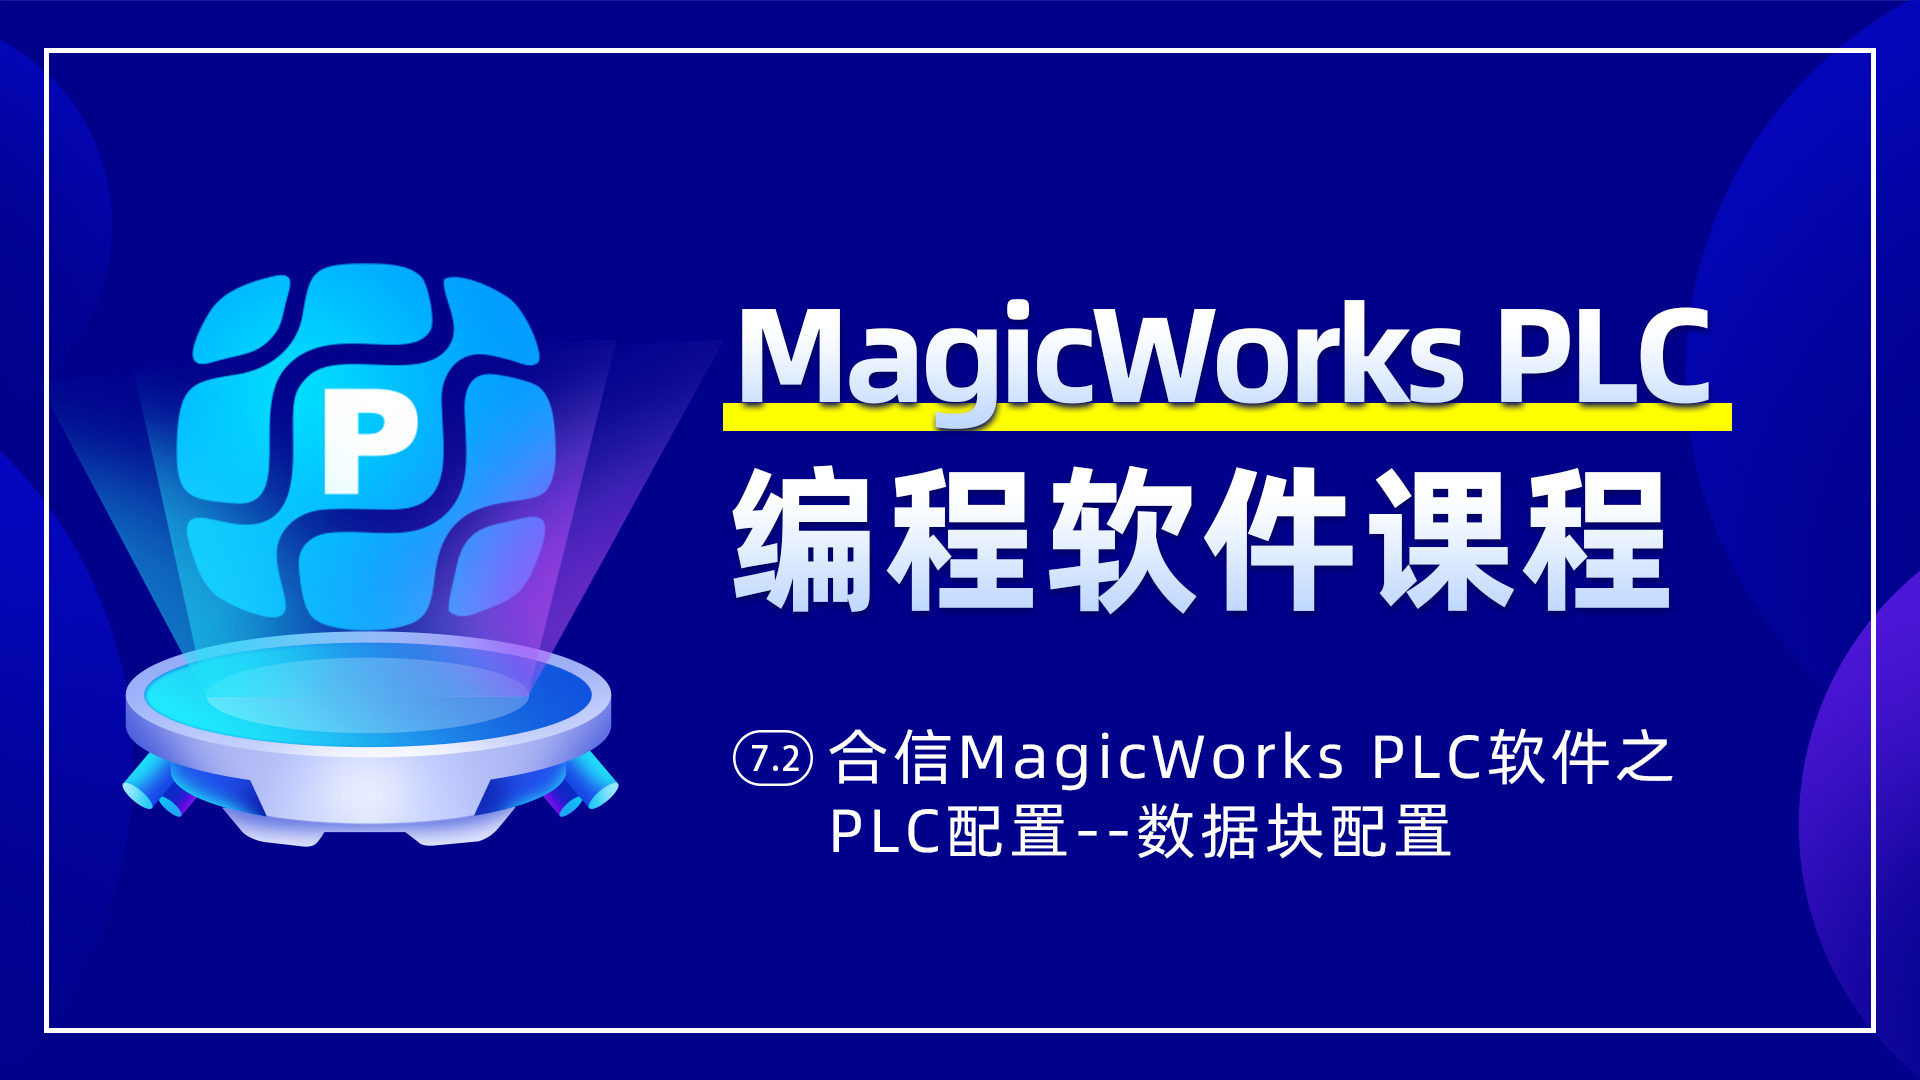 7.2、合信MagicWorks PLC軟件PLC配置之數據塊配置